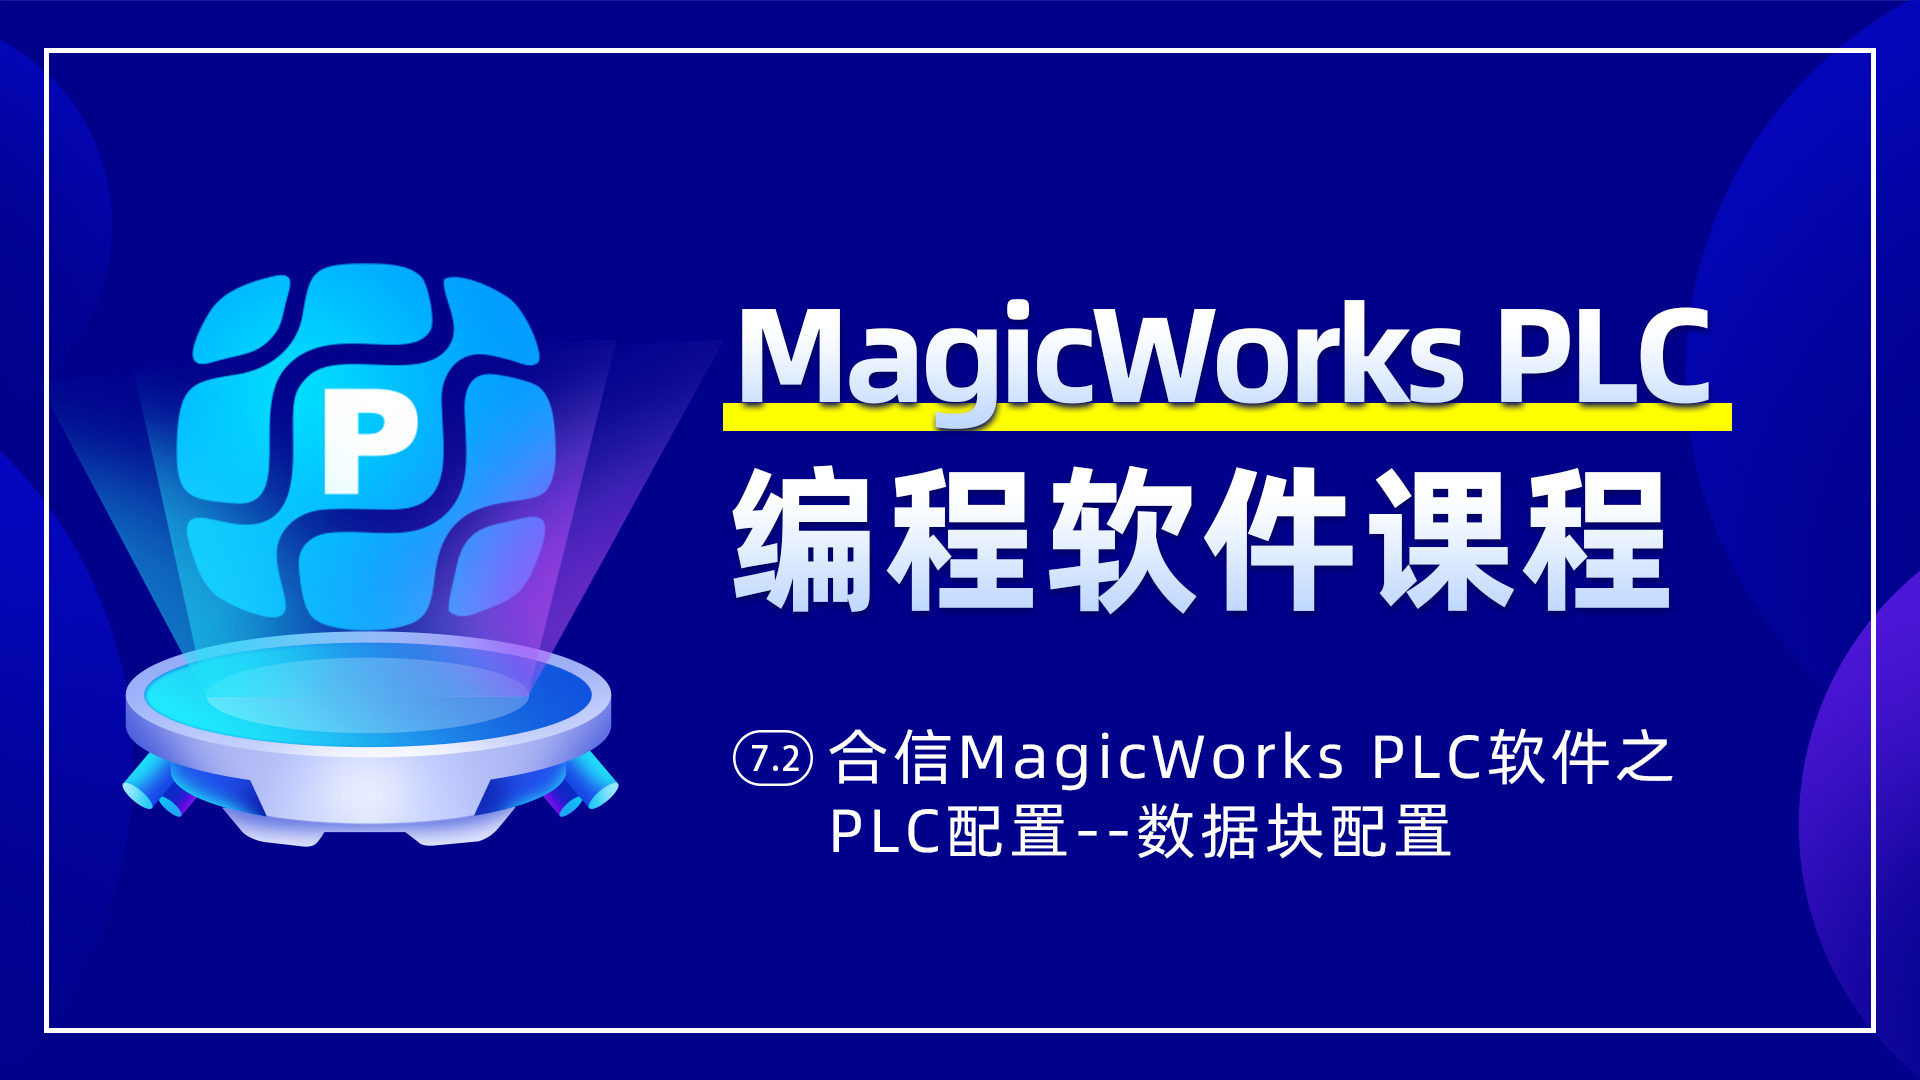 7.2、合信MagicWorks PLC軟件PLC配置之數據塊配置